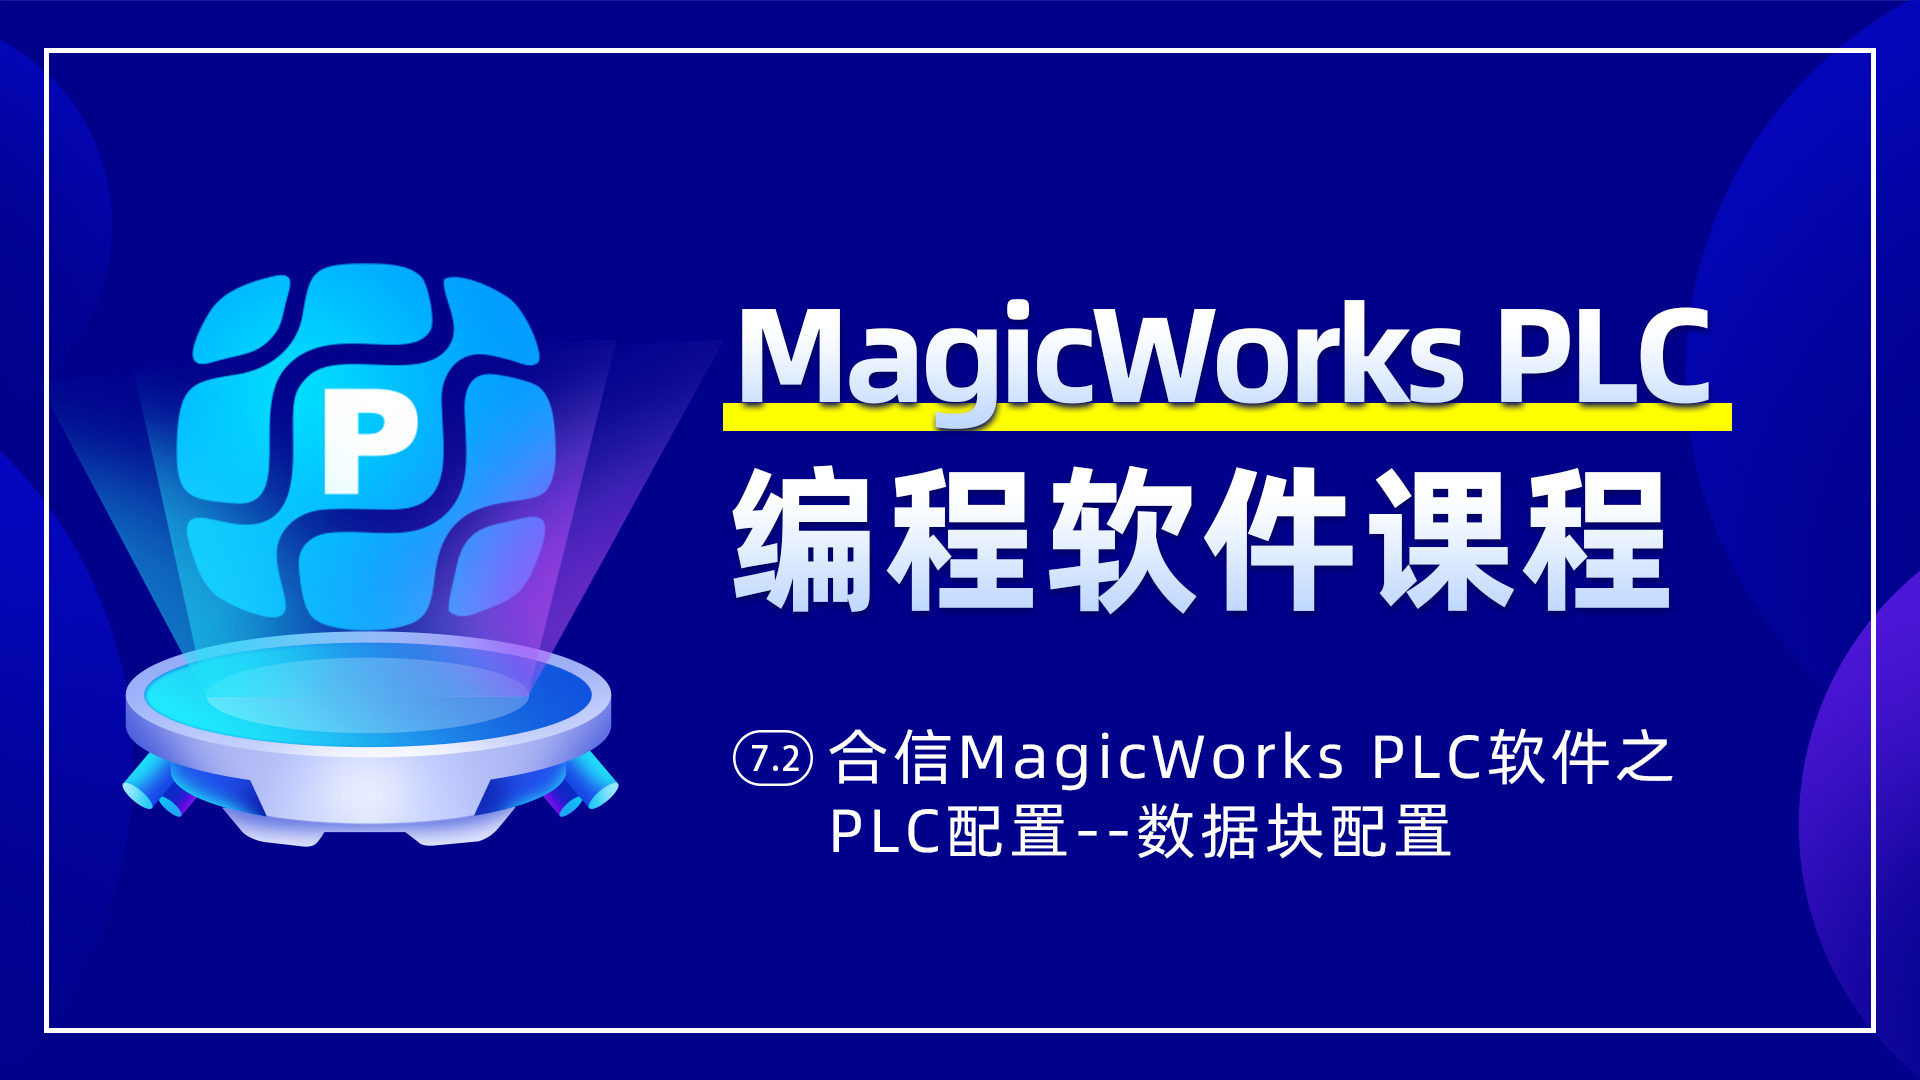 7.2、合信MagicWorks PLC軟件PLC配置之數據塊配置